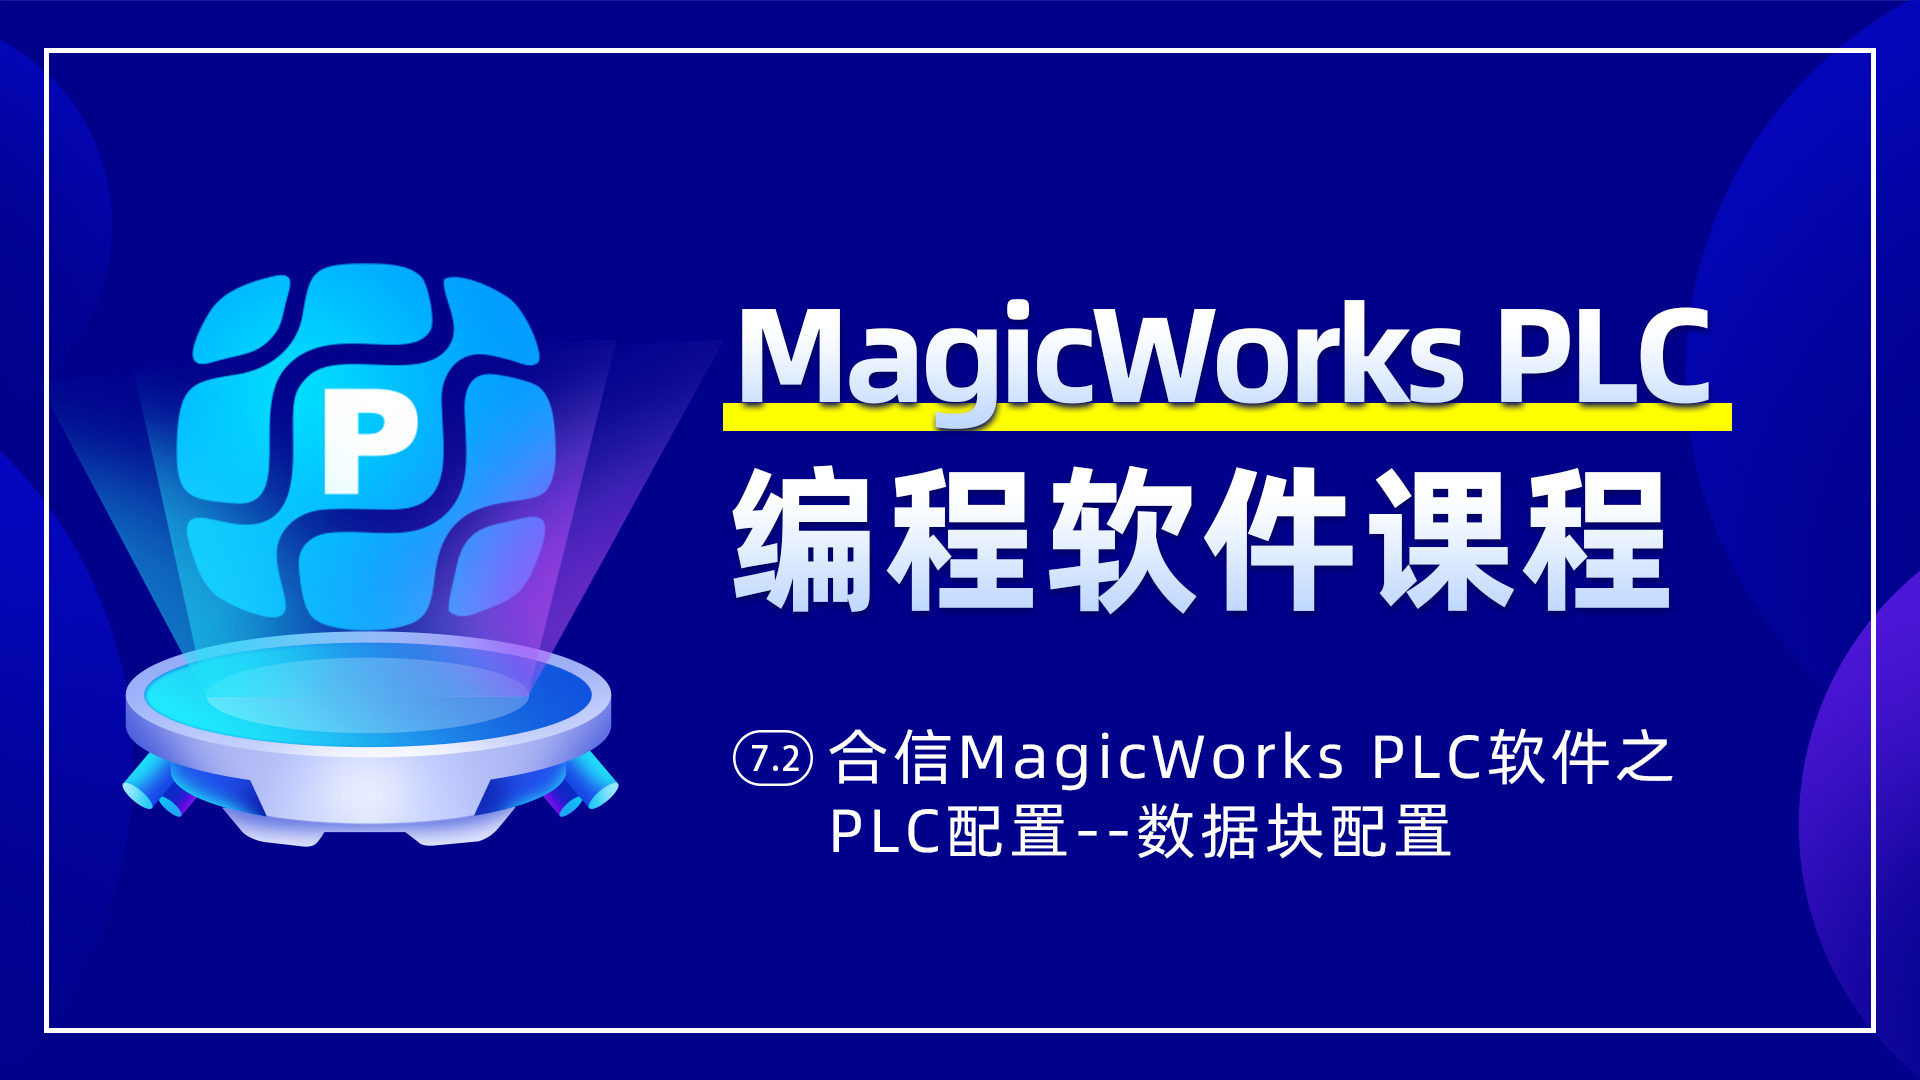 7.2、合信MagicWorks PLC軟件PLC配置之數據塊配置